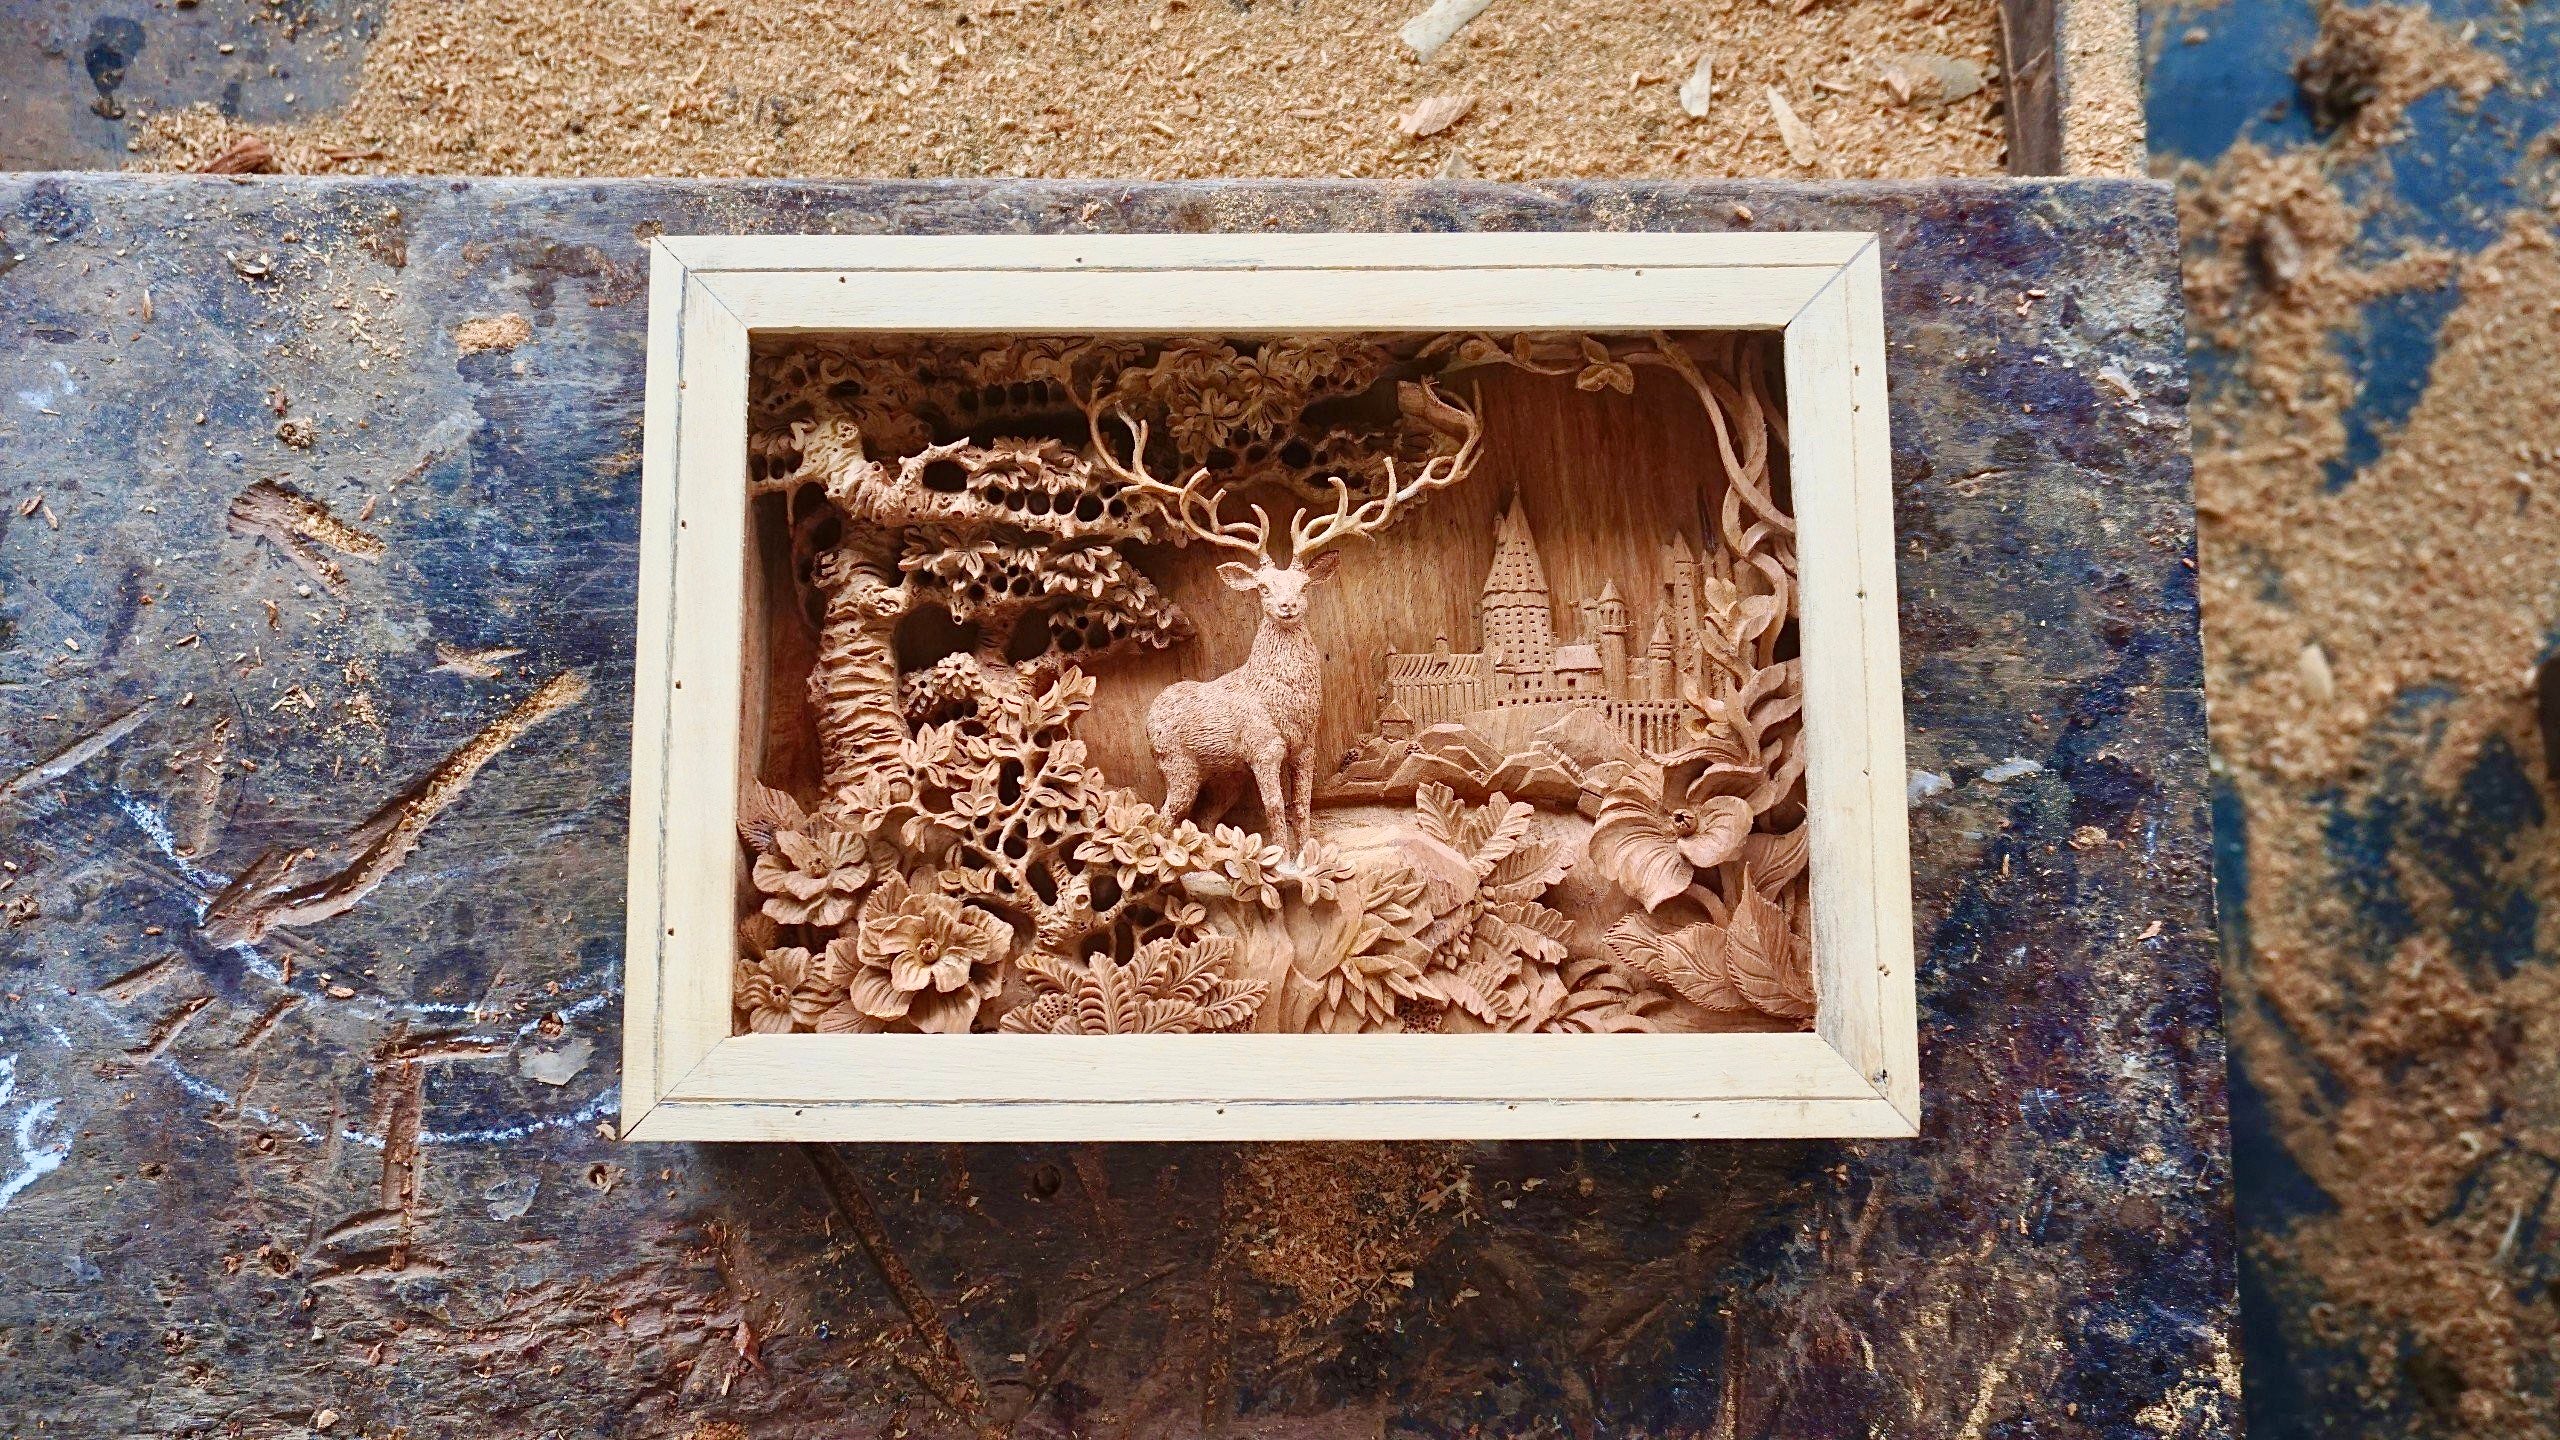 Deer - The Patronus Charm - Wood Carving